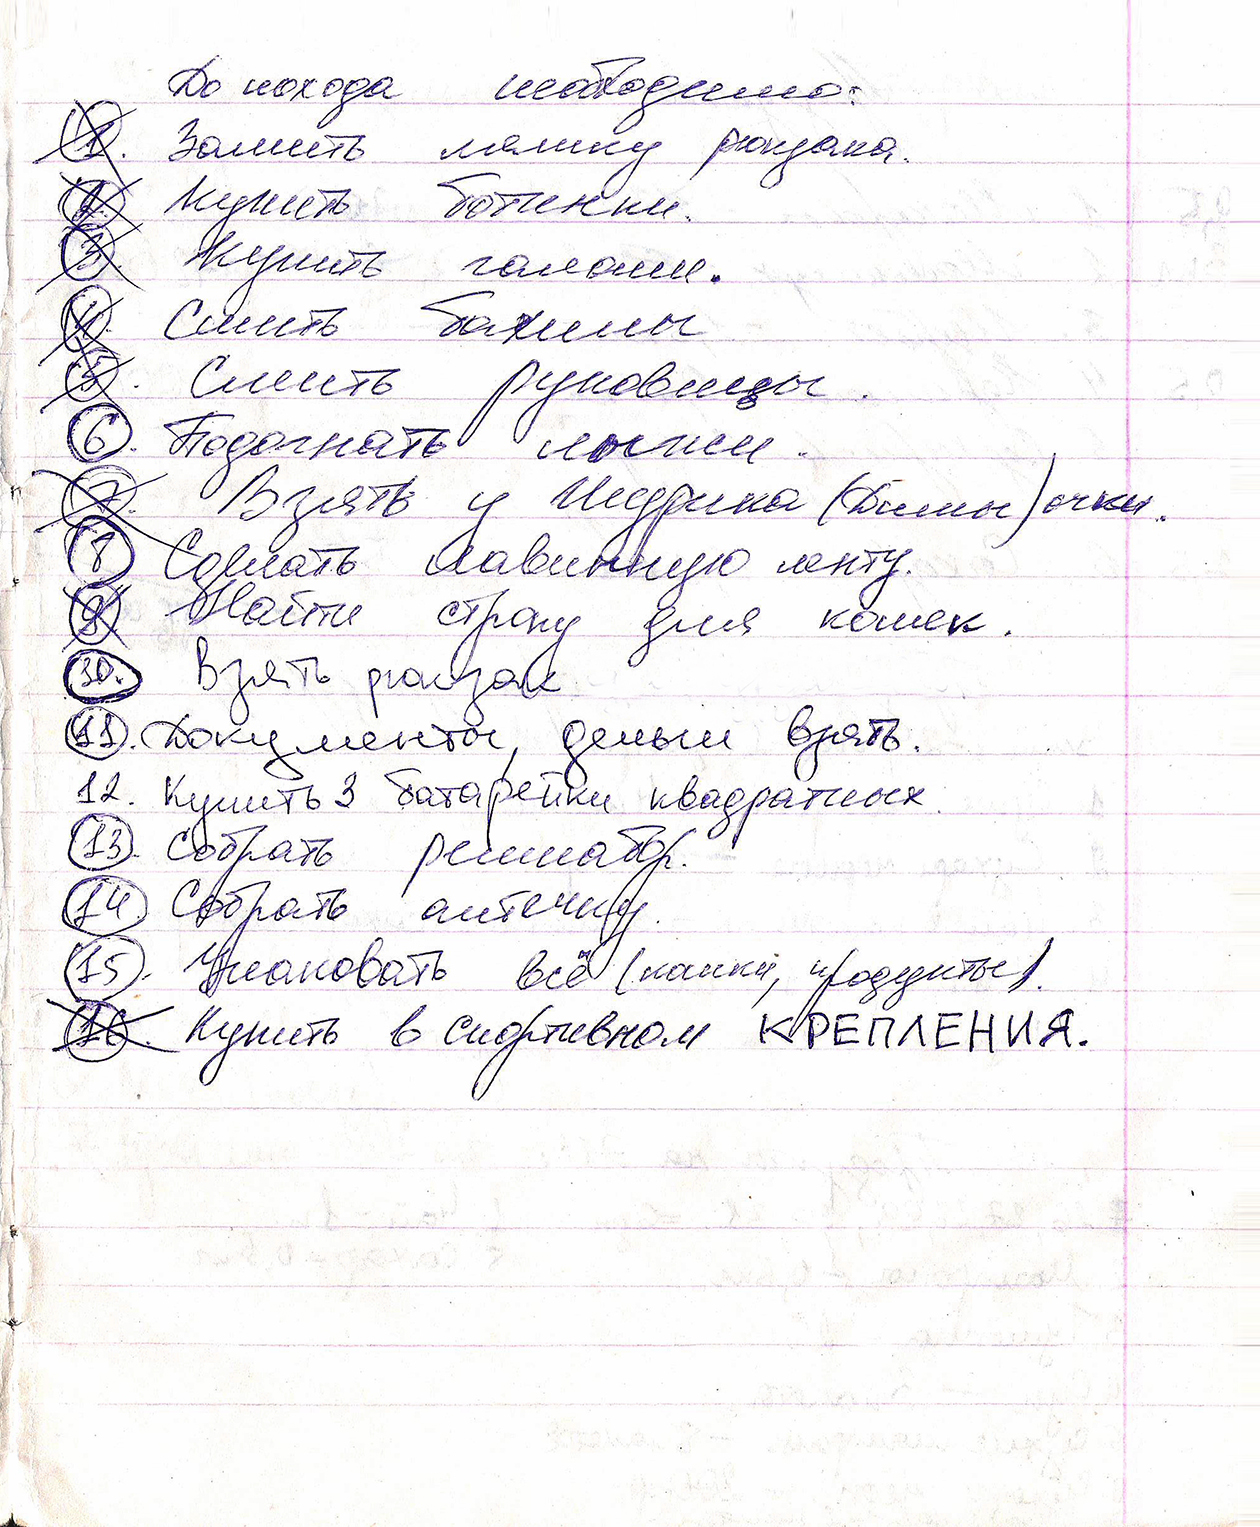 Список для похода в Хибины образца 1997 года